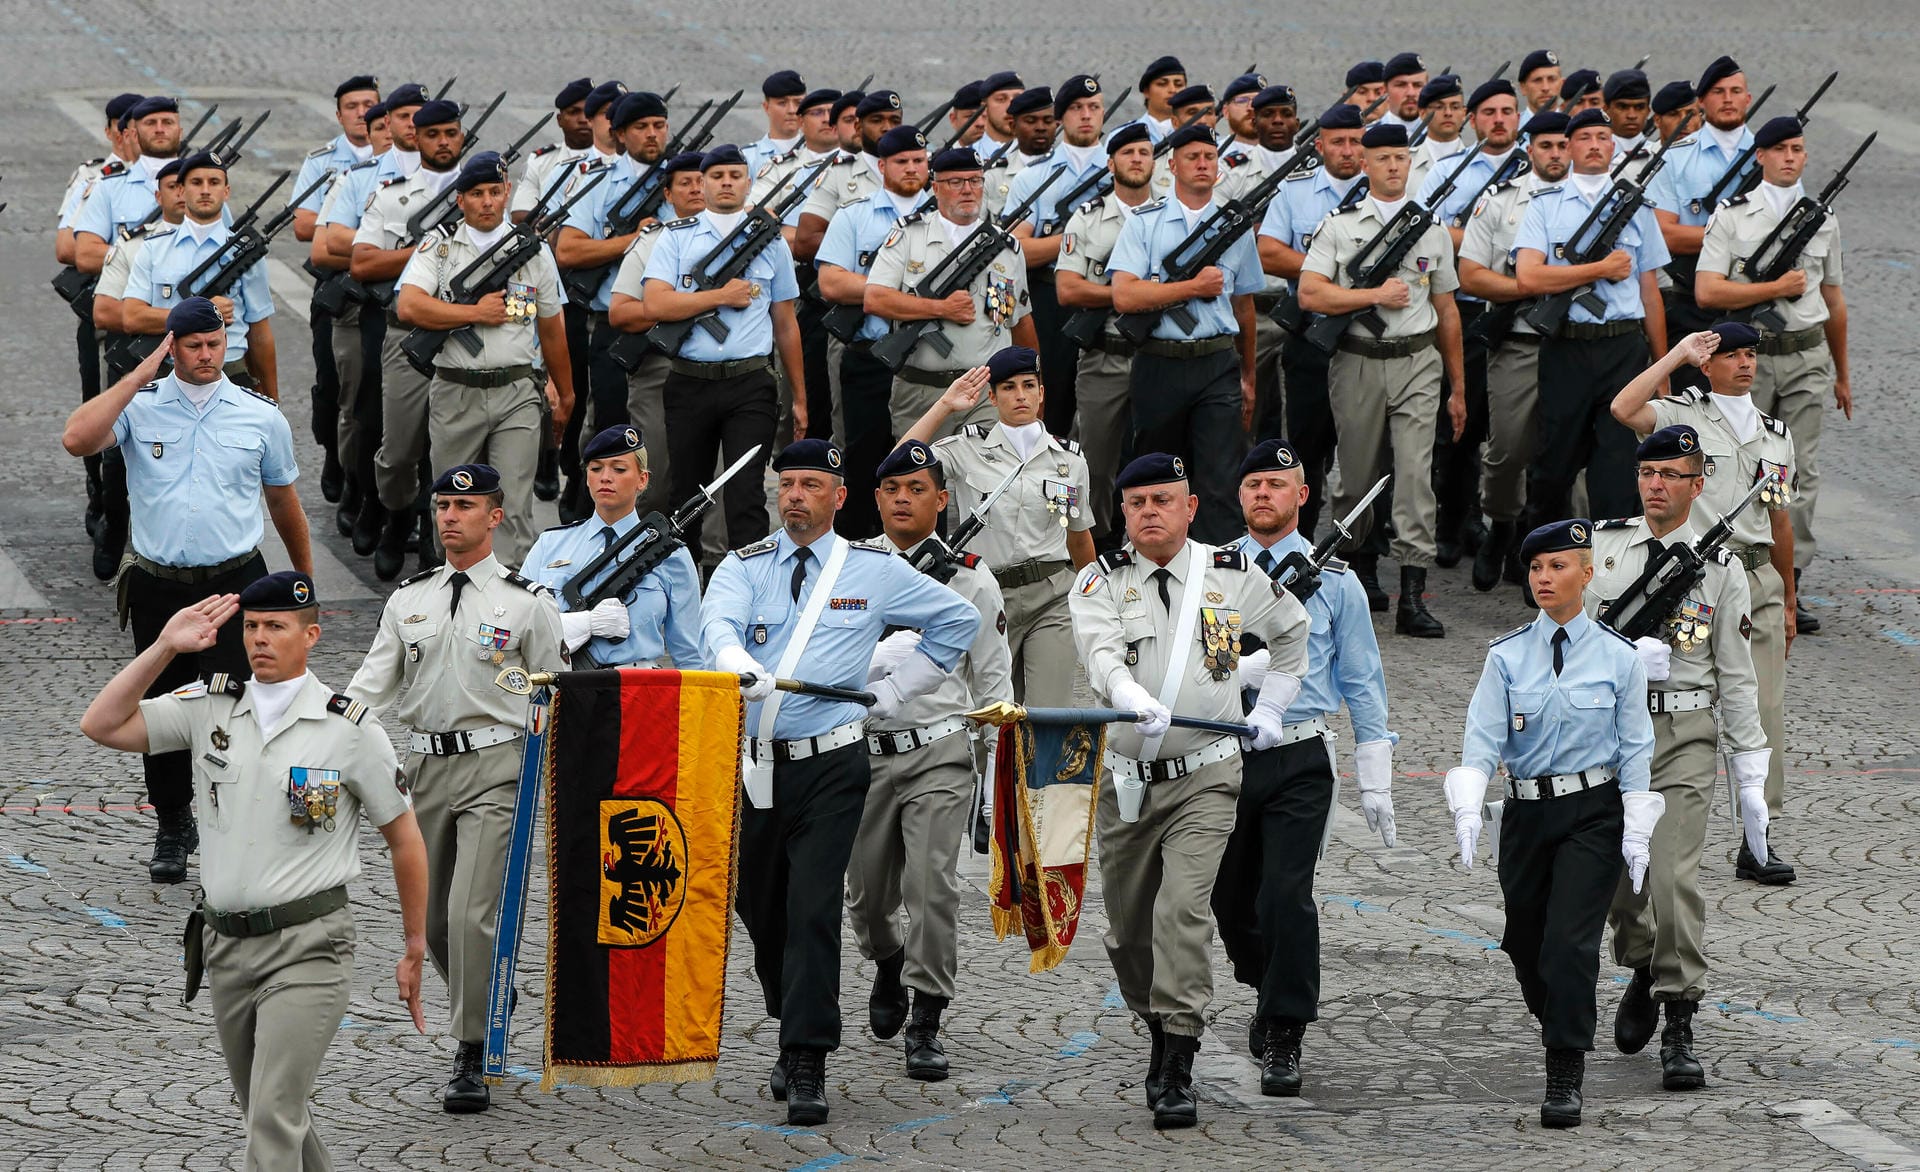 Nationalfeiertag in Frankreich: An der Militärparade in Paris beteiligten sich auch deutsche Soldaten.